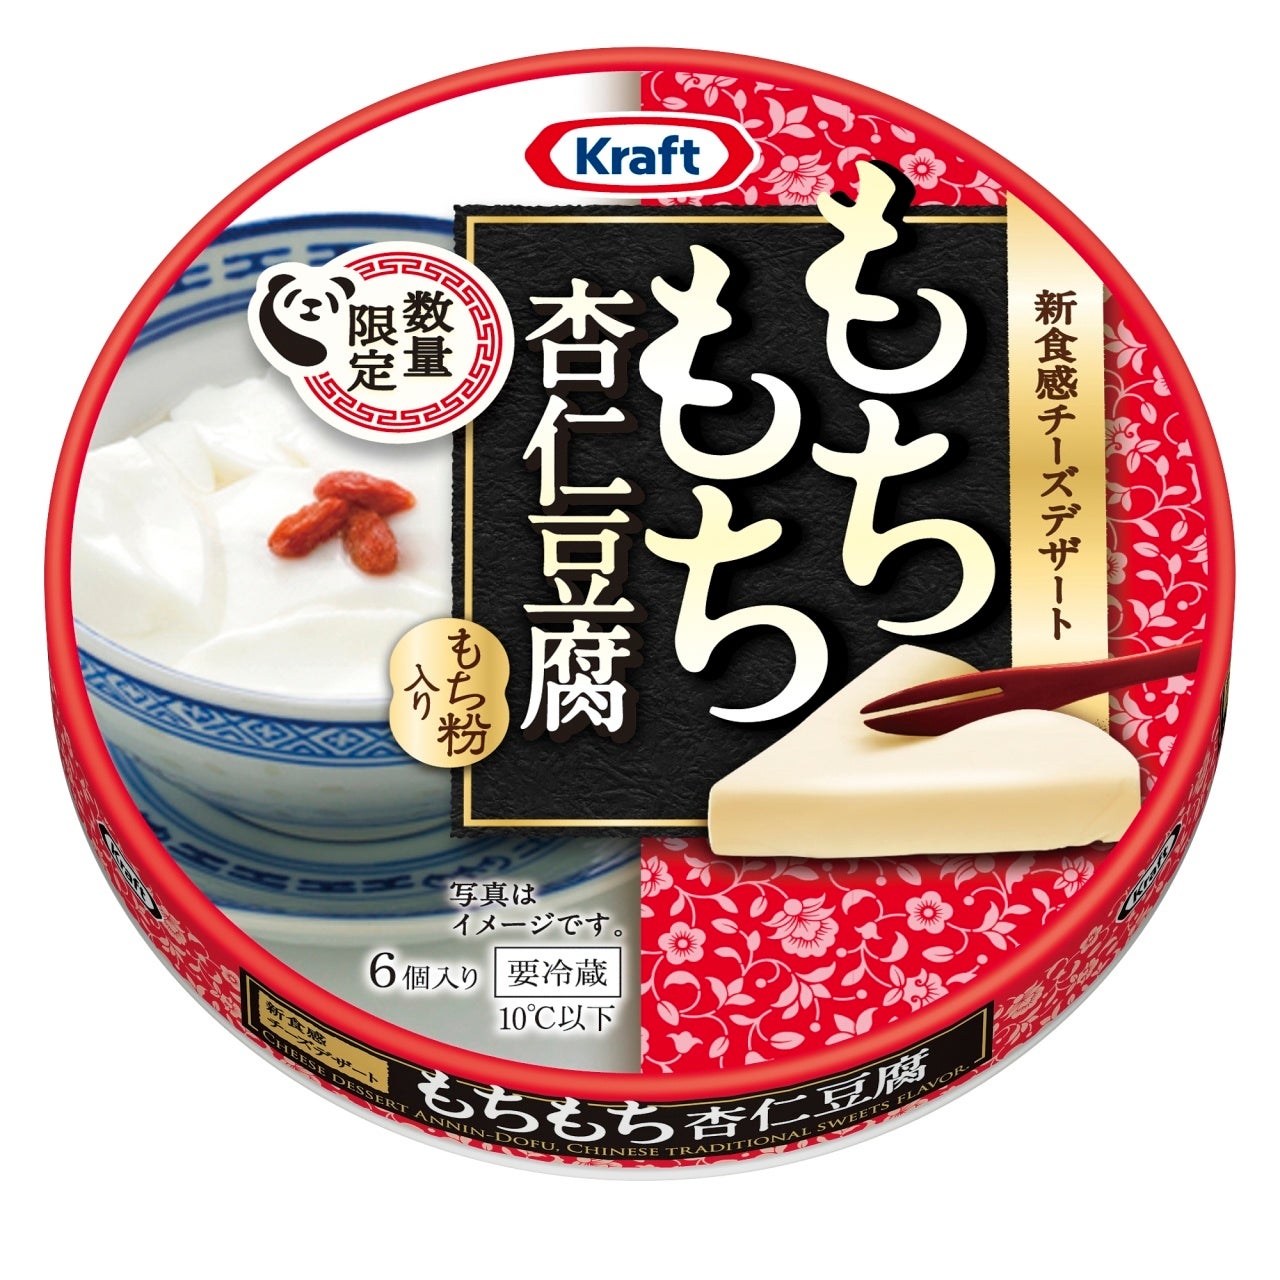 酸味と甘みのバランスが異なった4種のイチゴを食べ比べ　特許技術を用いて作られたフレッシュでジューシーな「雪溶け生イチゴ」Cake.jpにて6月23日より販売を開始